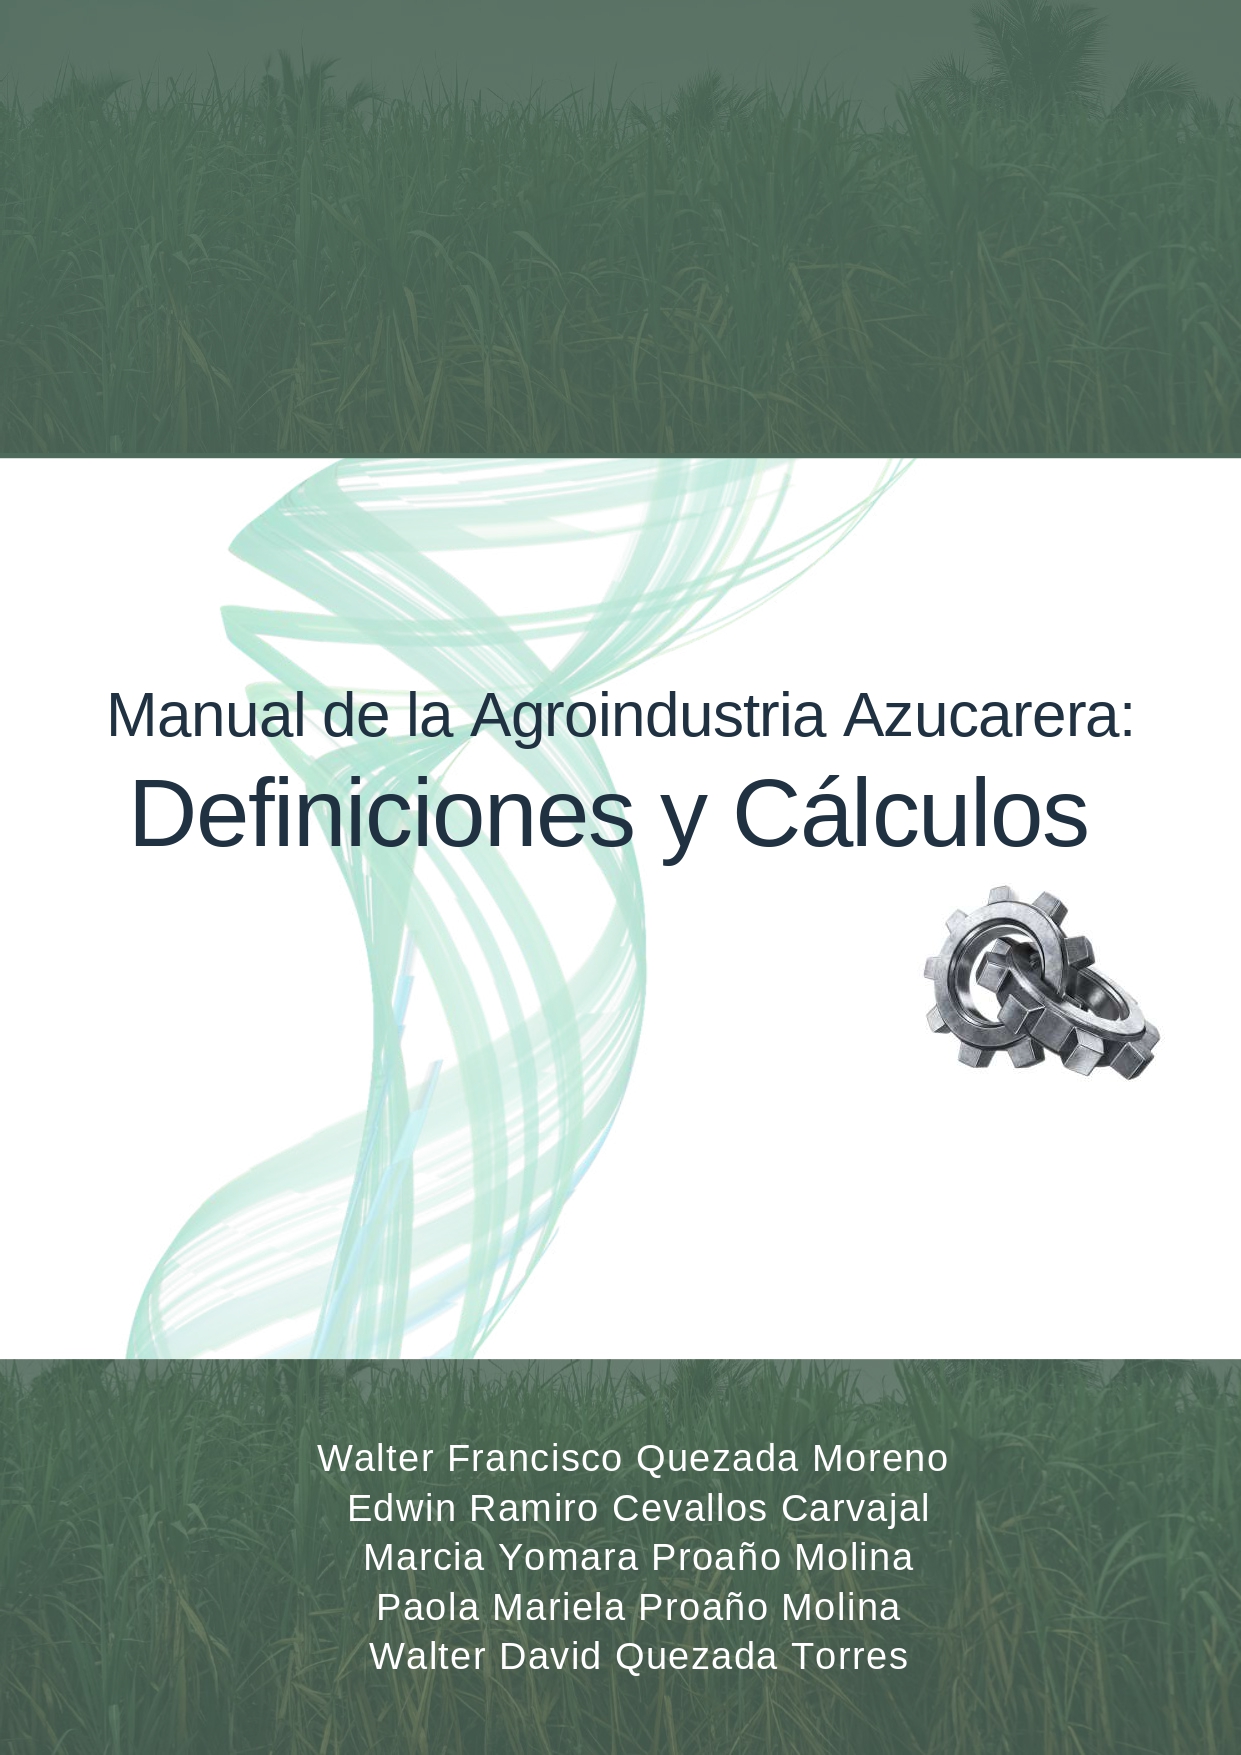 Imagen de portada del libro Manual de la agroindustria azucarera: Definiciones y Cálculos